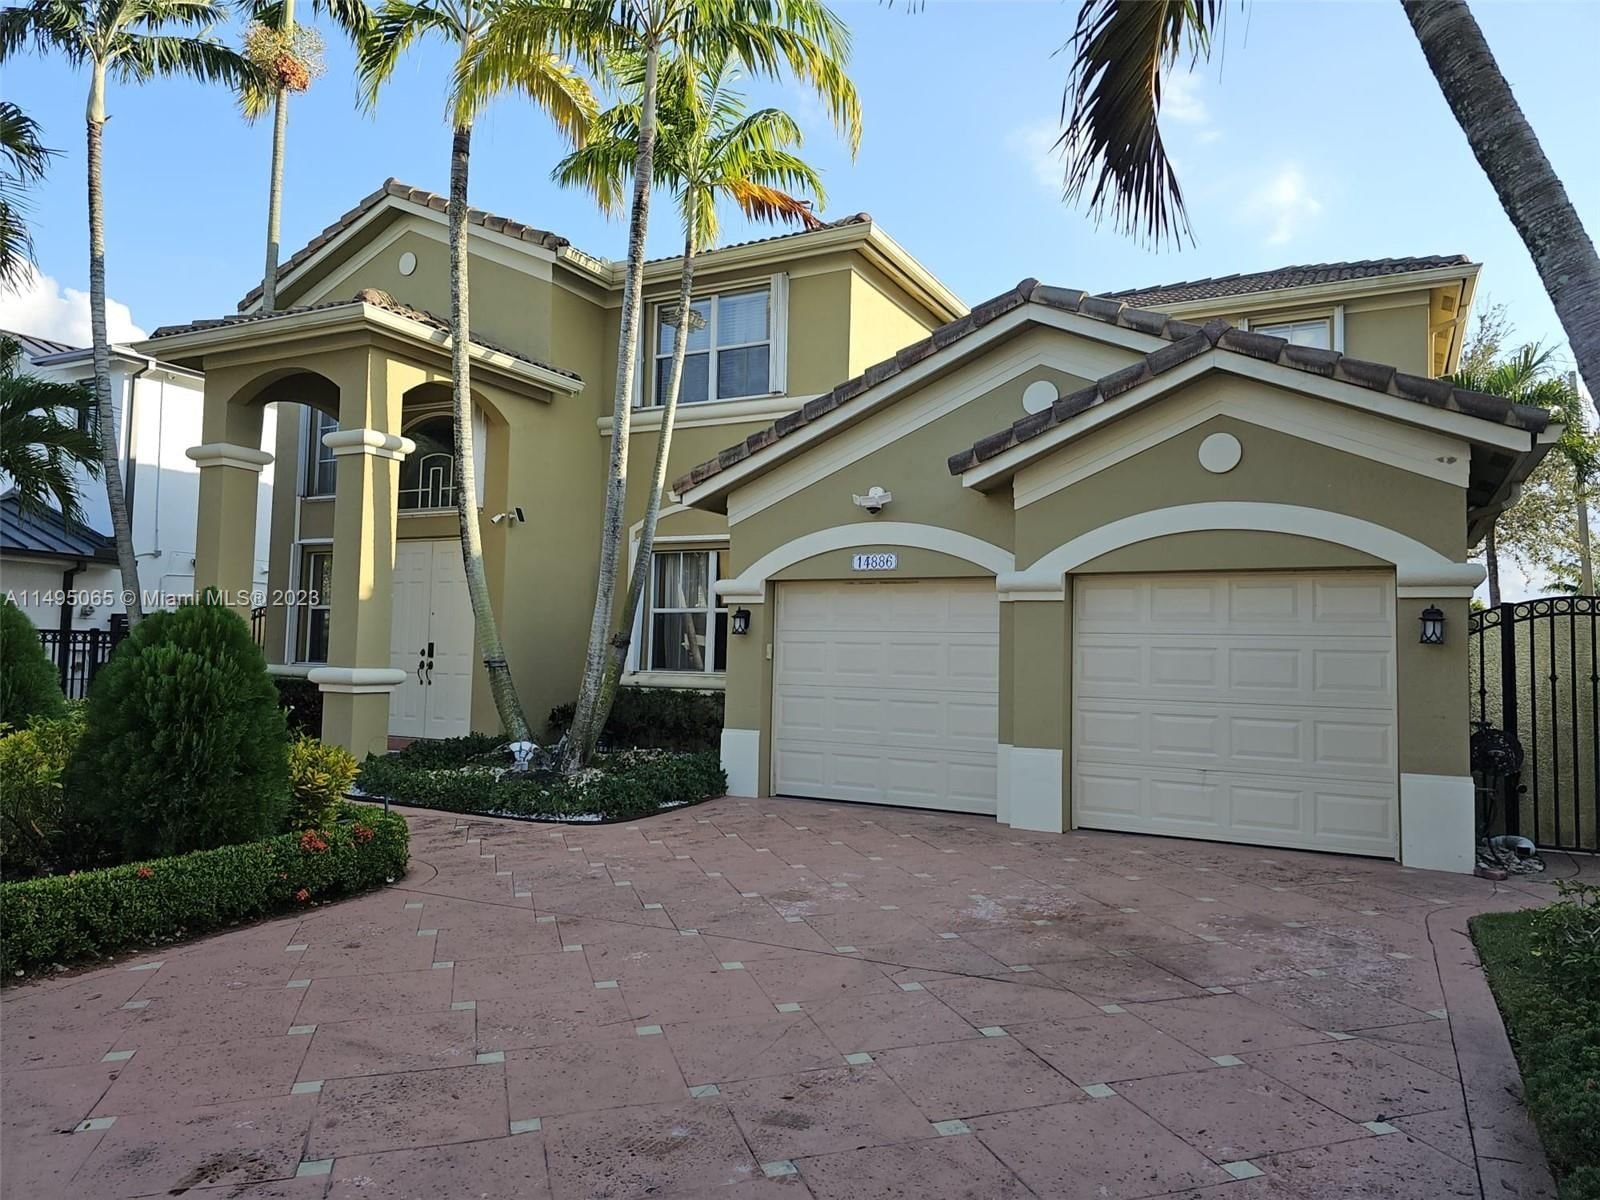 Real estate property located at 14886 25th Ln, Miami-Dade County, SELLA SUB, Miami, FL